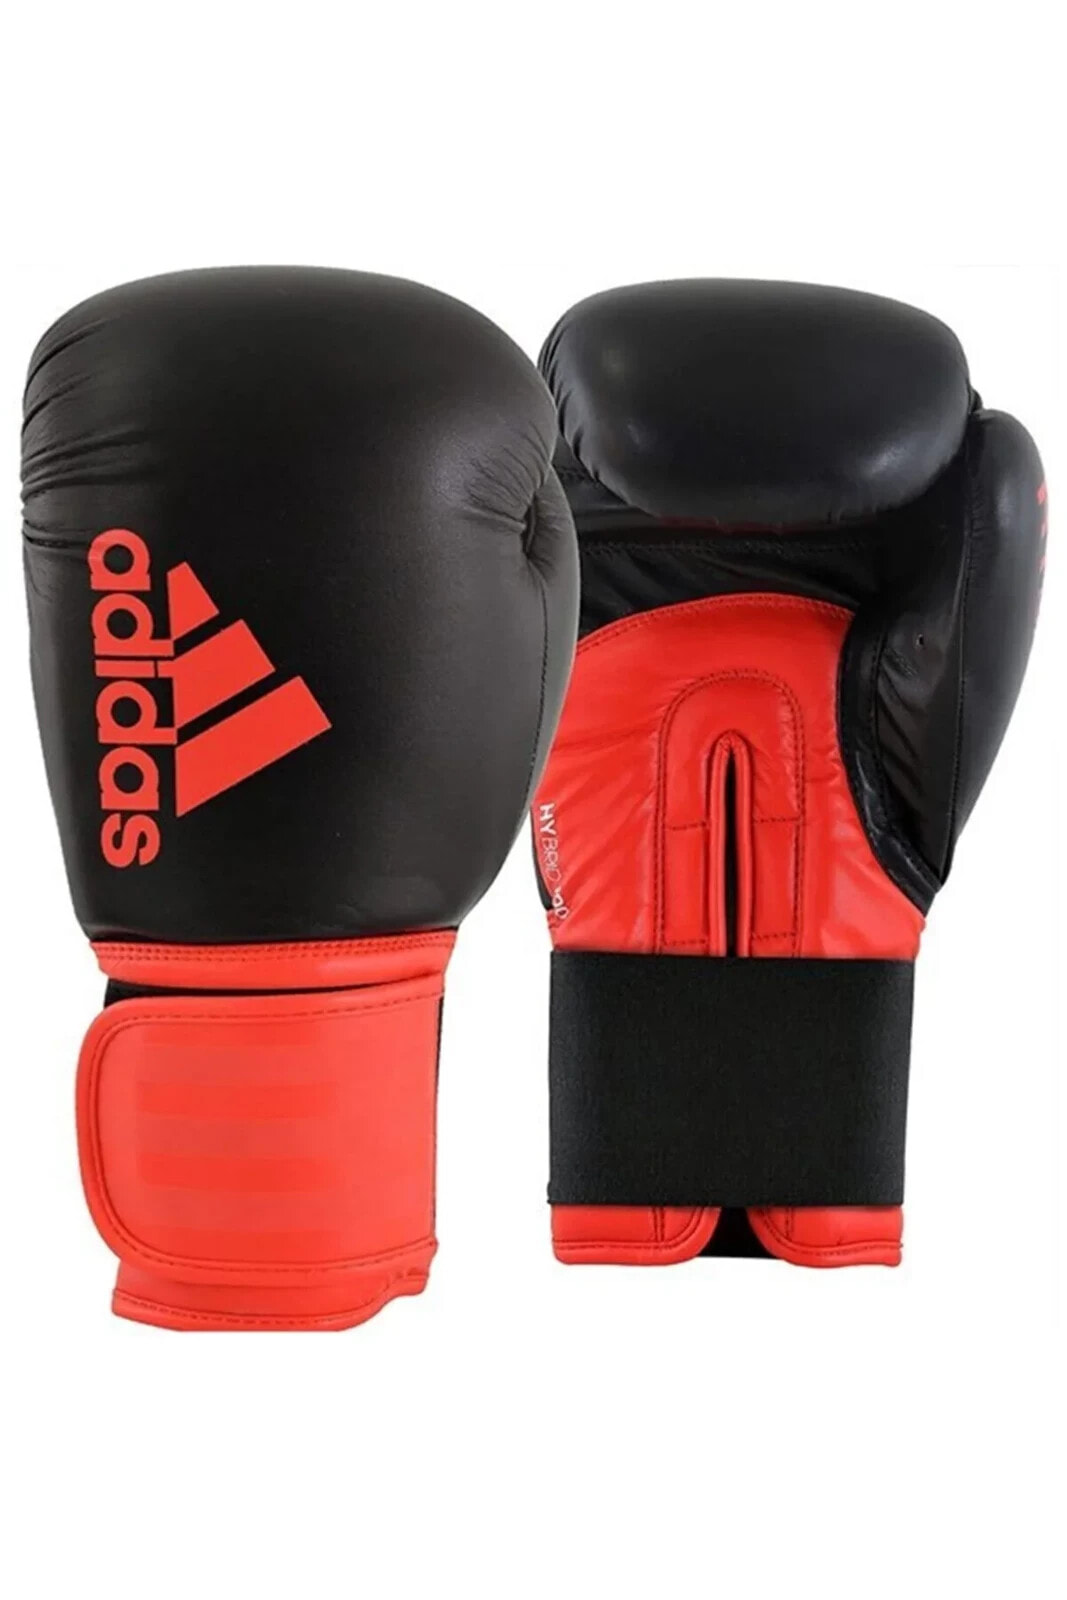 Adıh100 Hybrid100 Boks Eldiveni Boxing Gloves